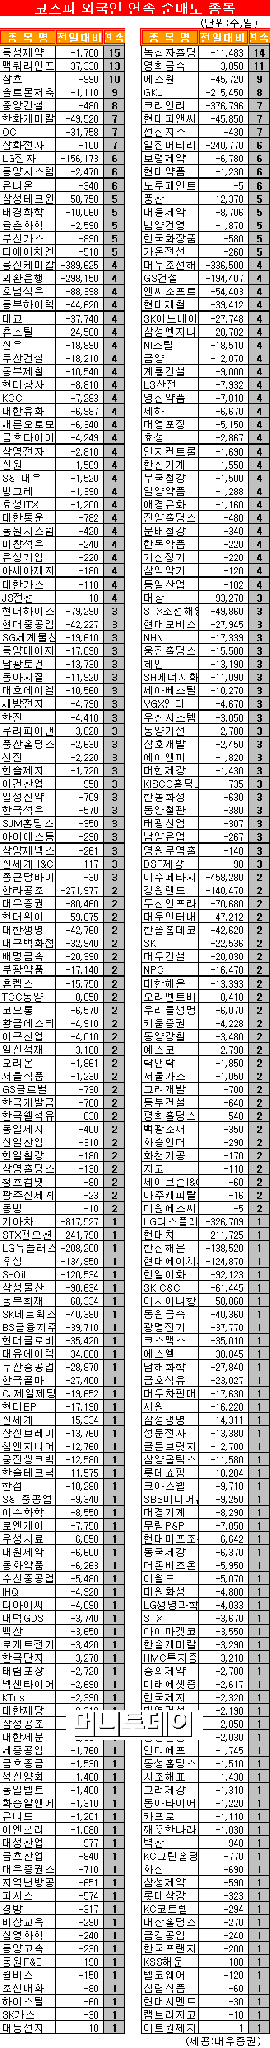 [표]코스피 외국인 연속 순매도 종목-15일